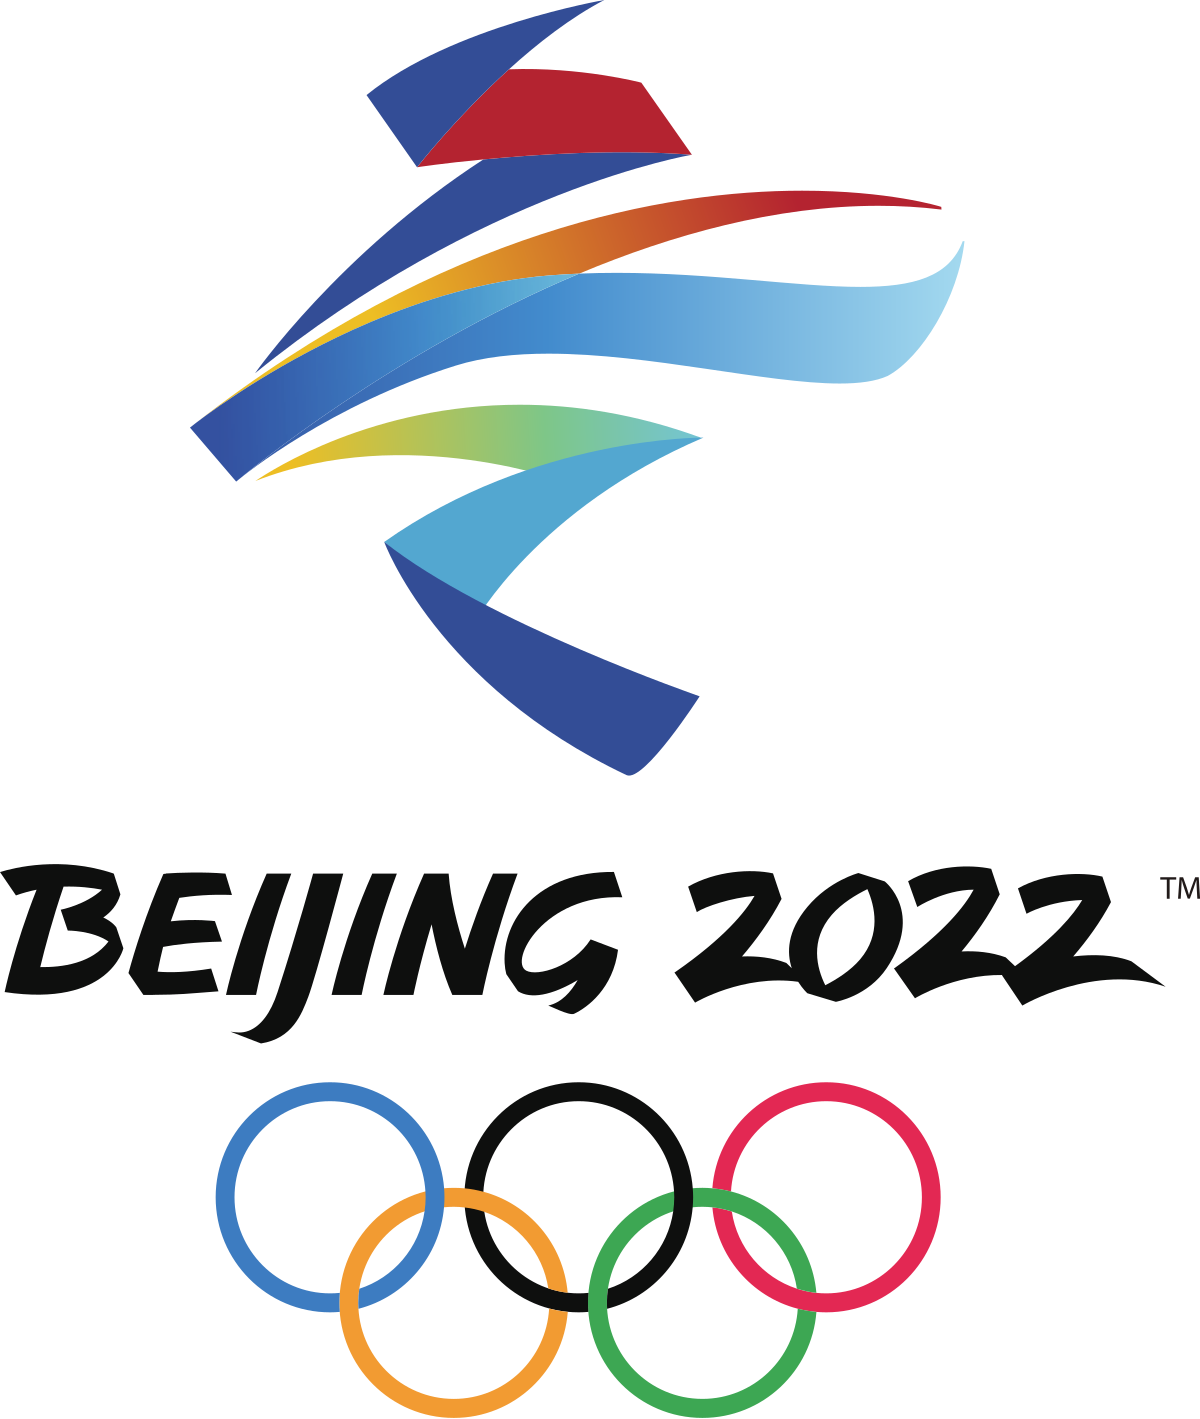 2022 Beijing Winter Olympics monogram